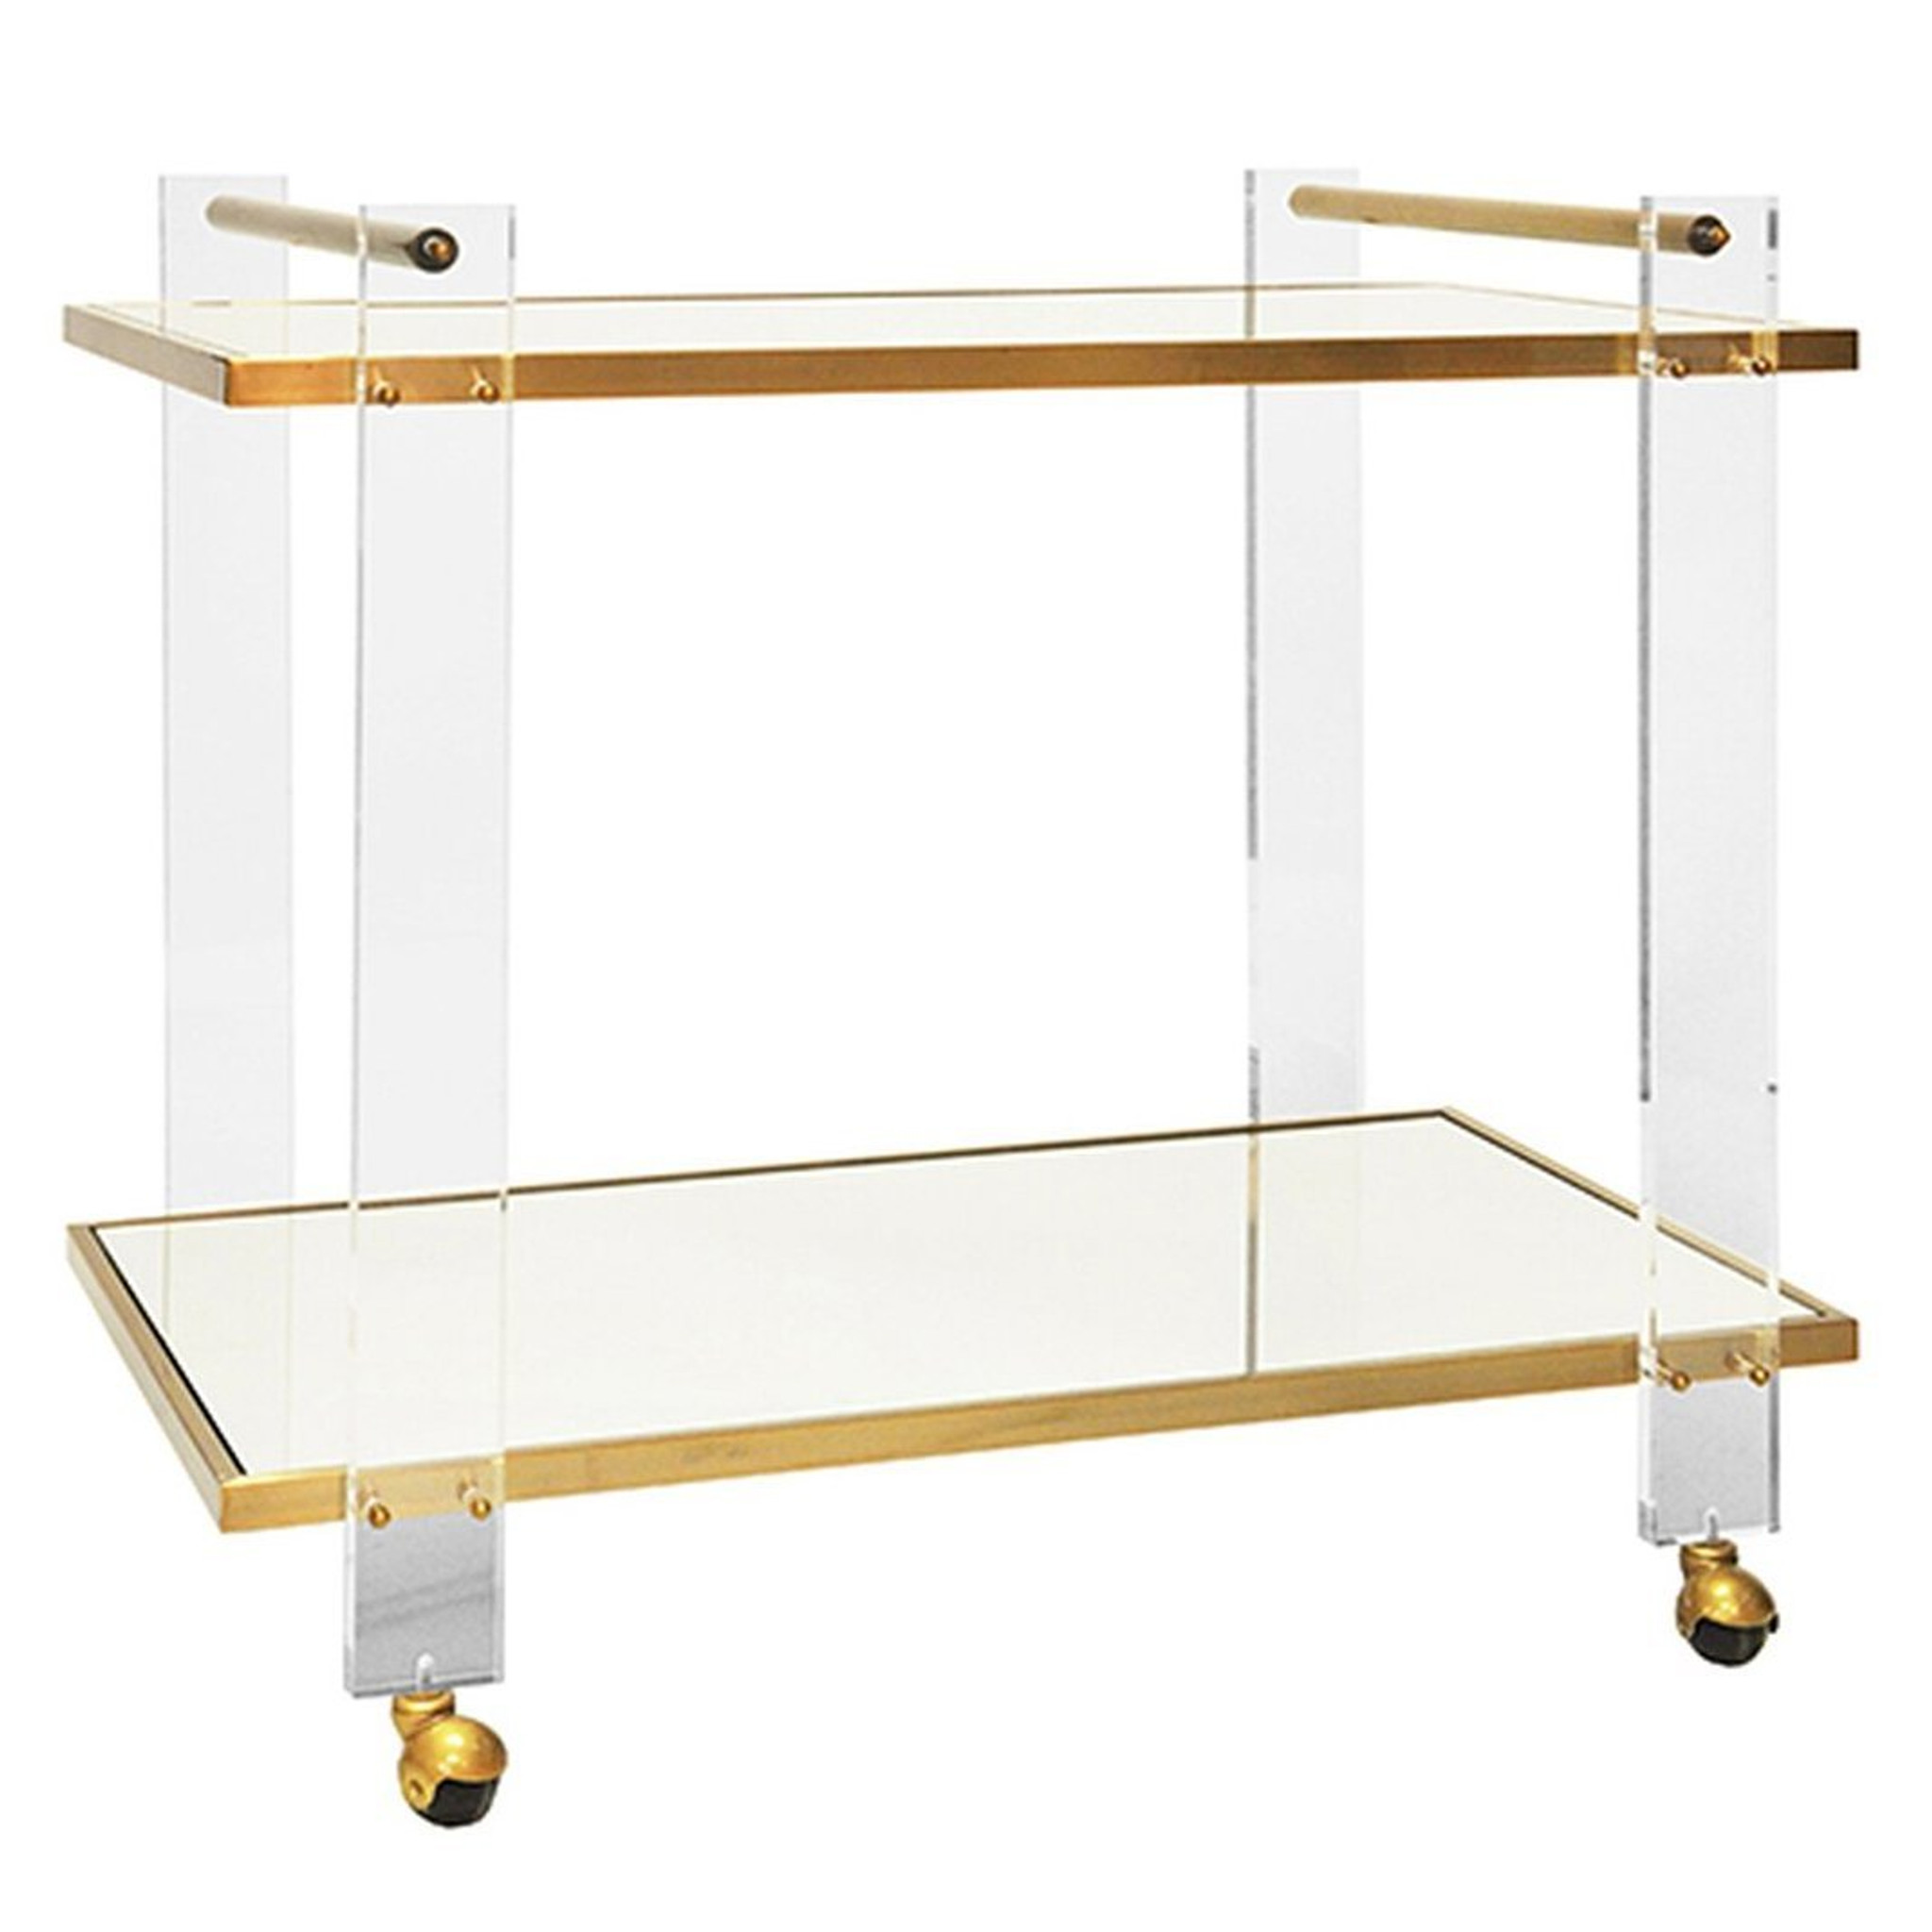 clear lucite leg and brass modern bar cart with storage shelf worlds away pierce